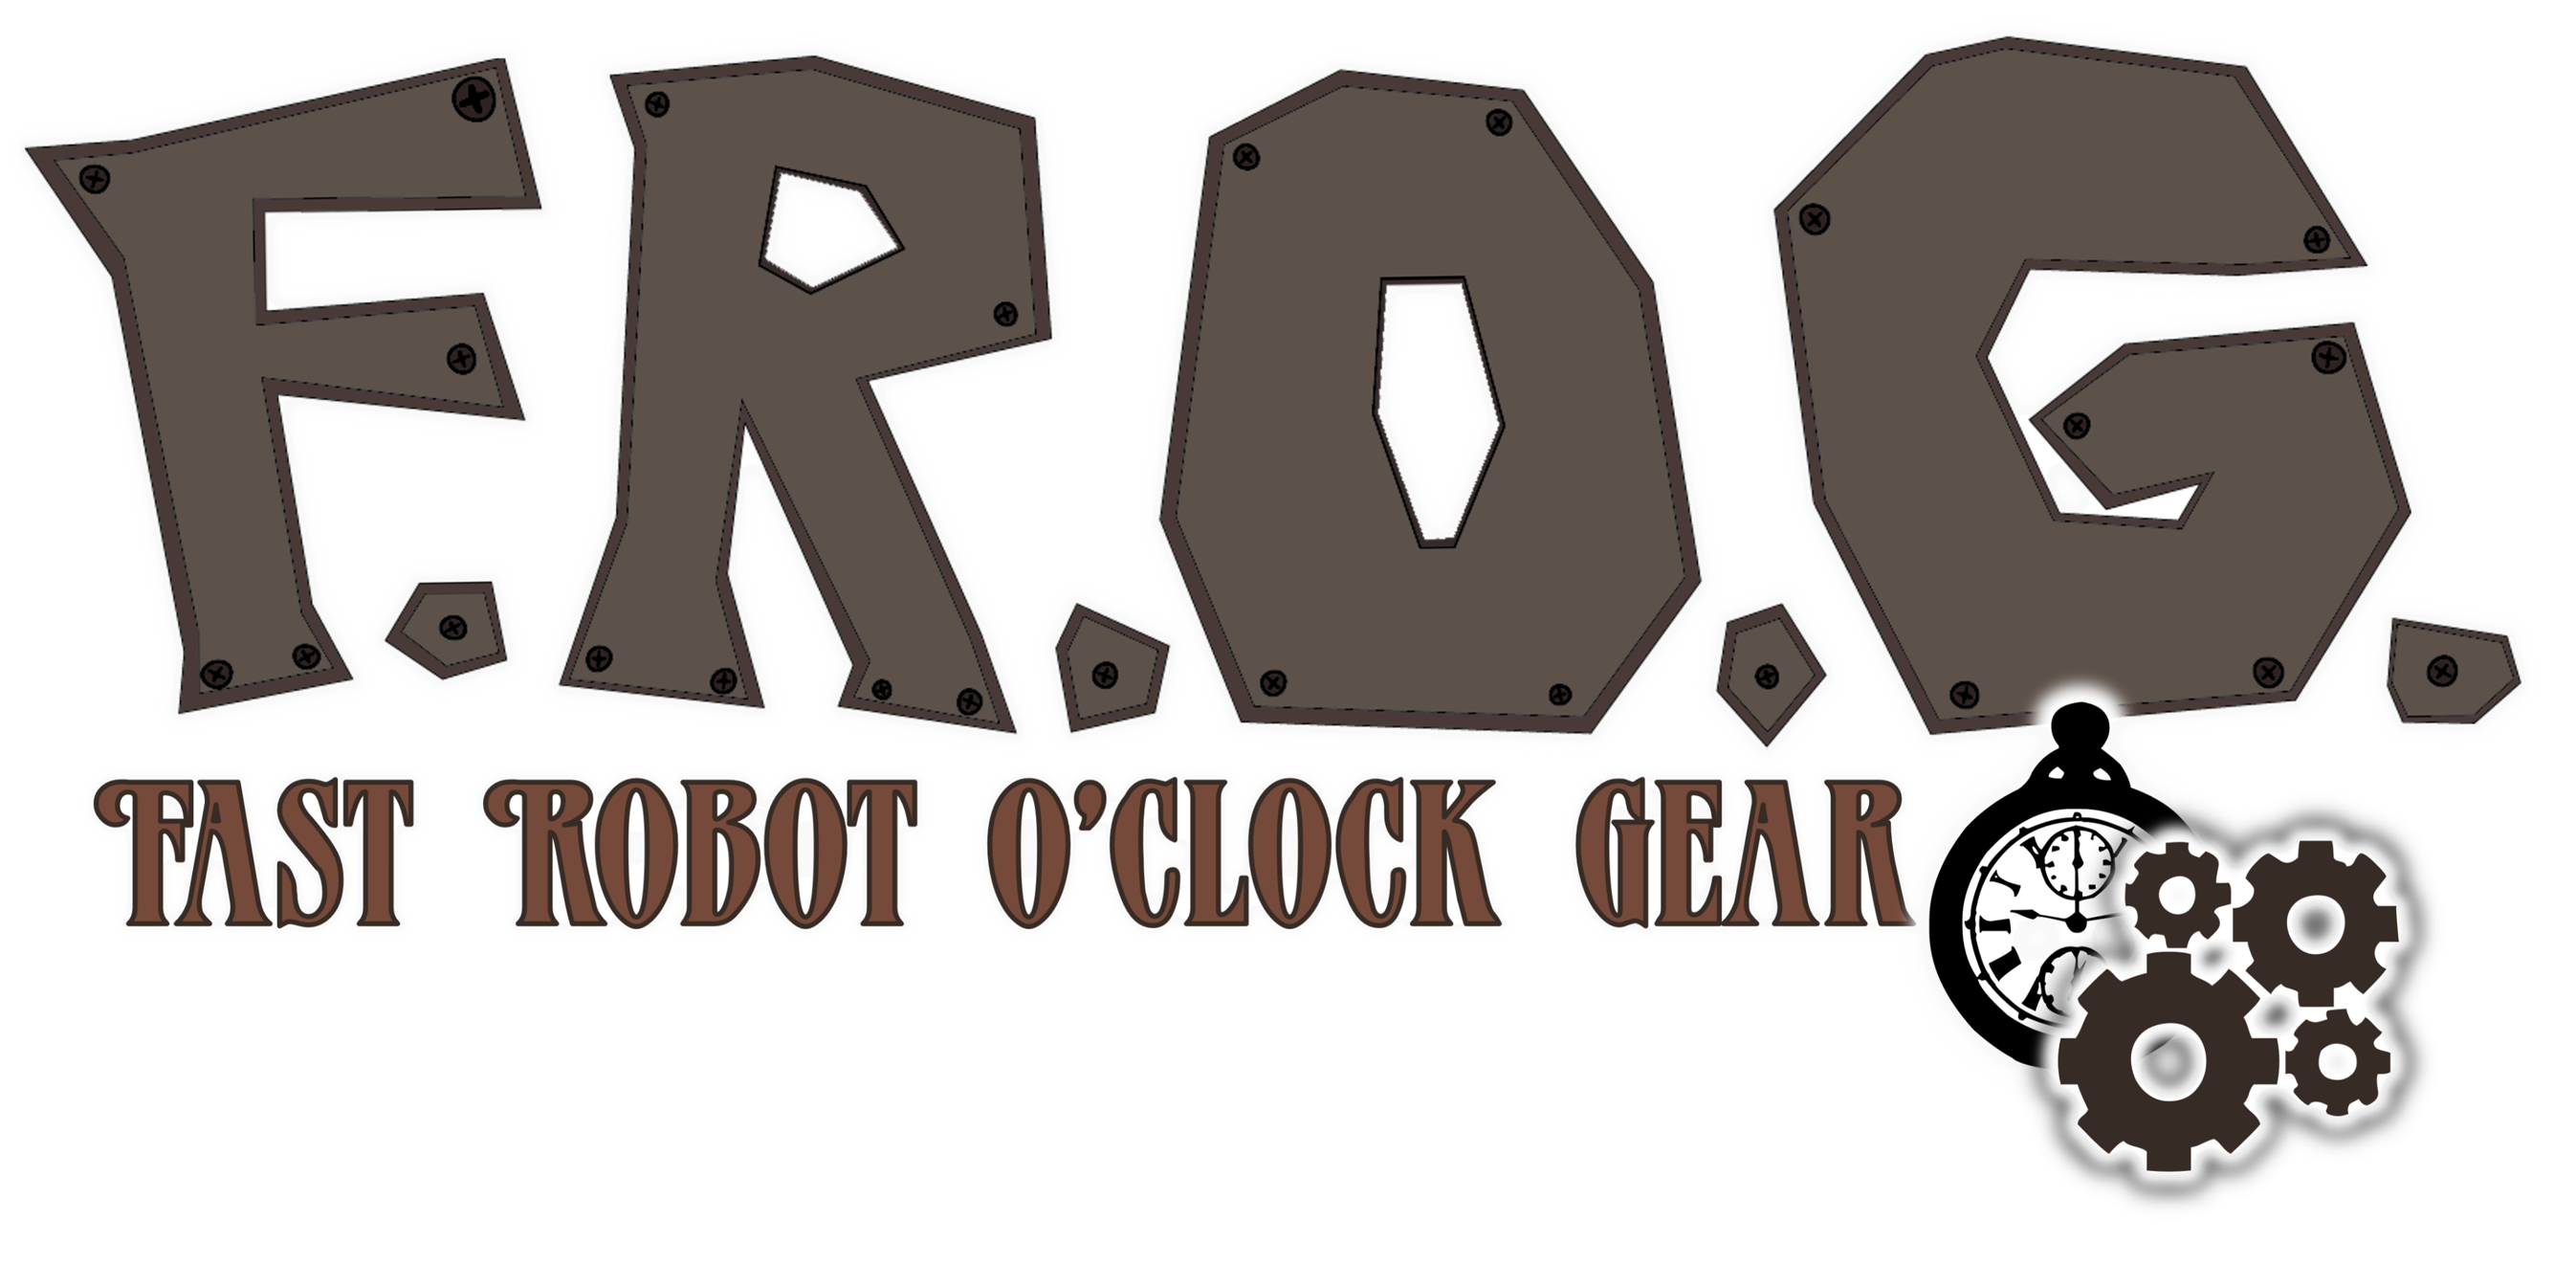 F.R.O.G. (Fast Robot O'Clock Gear)